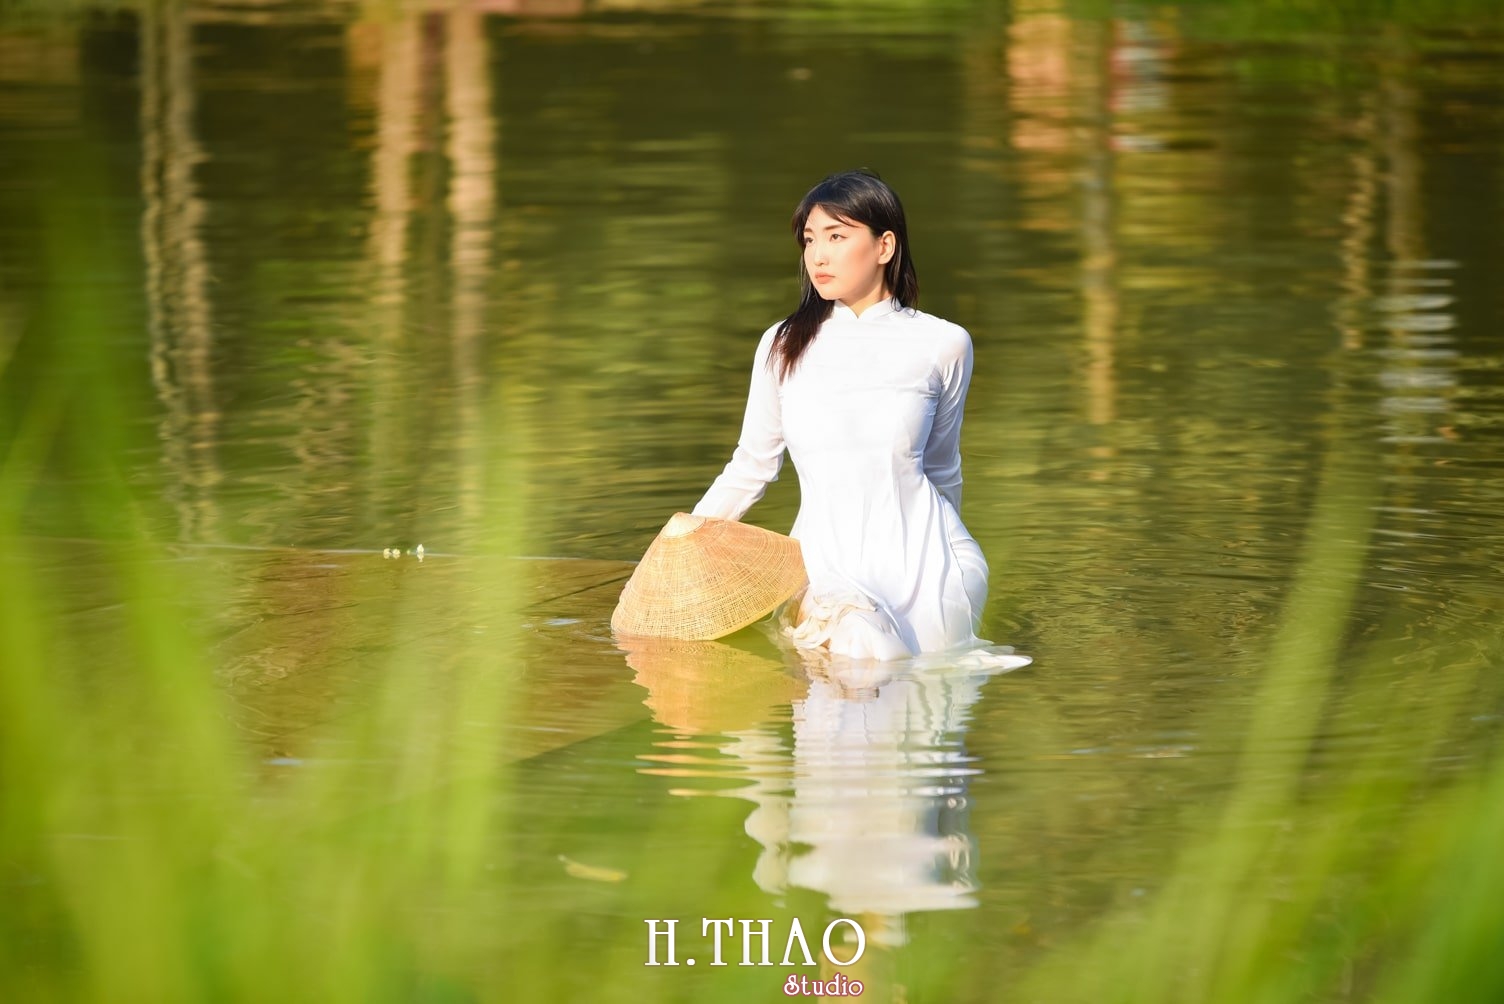 Anh ao dai 15 min - Concept chụp ảnh ngoại cảnh đẹp mà chất– HThao Studio